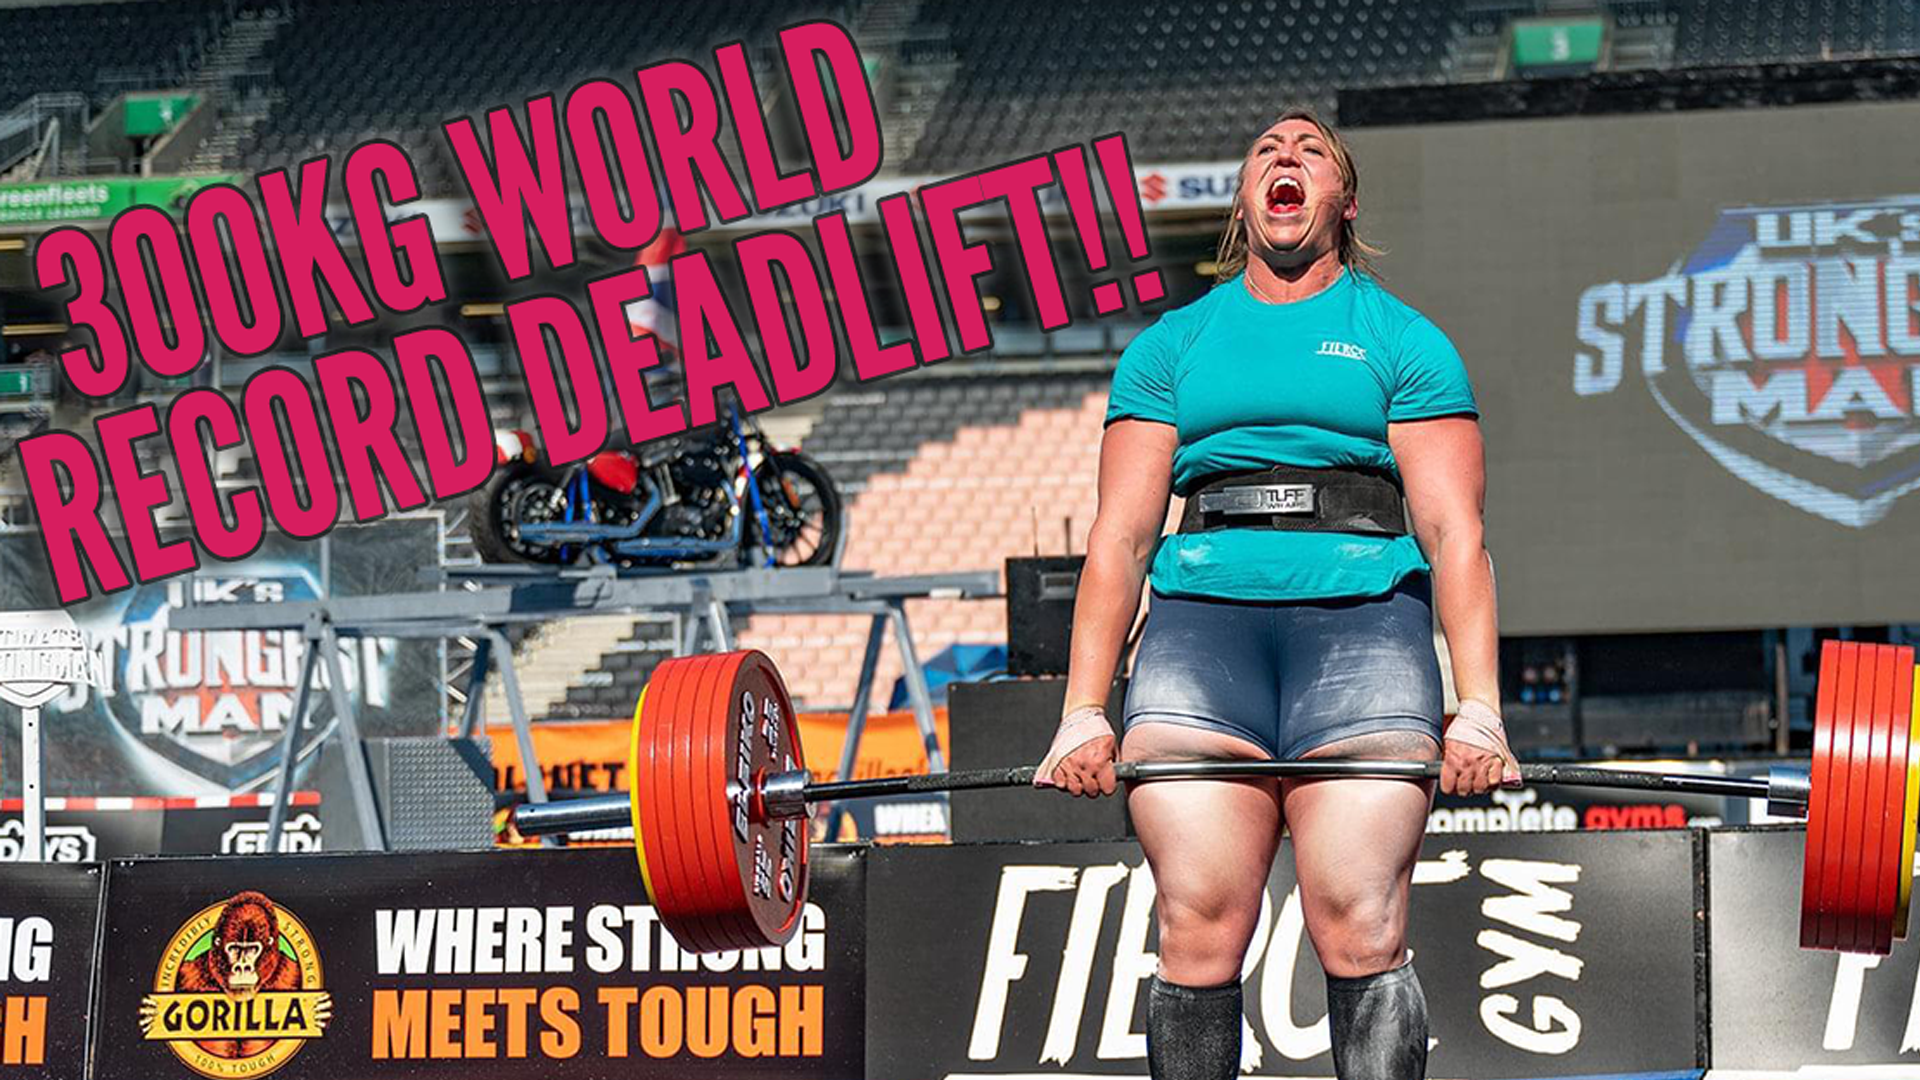 TuffWraps Athlete Sets 300kg World Record Women's Deadlift